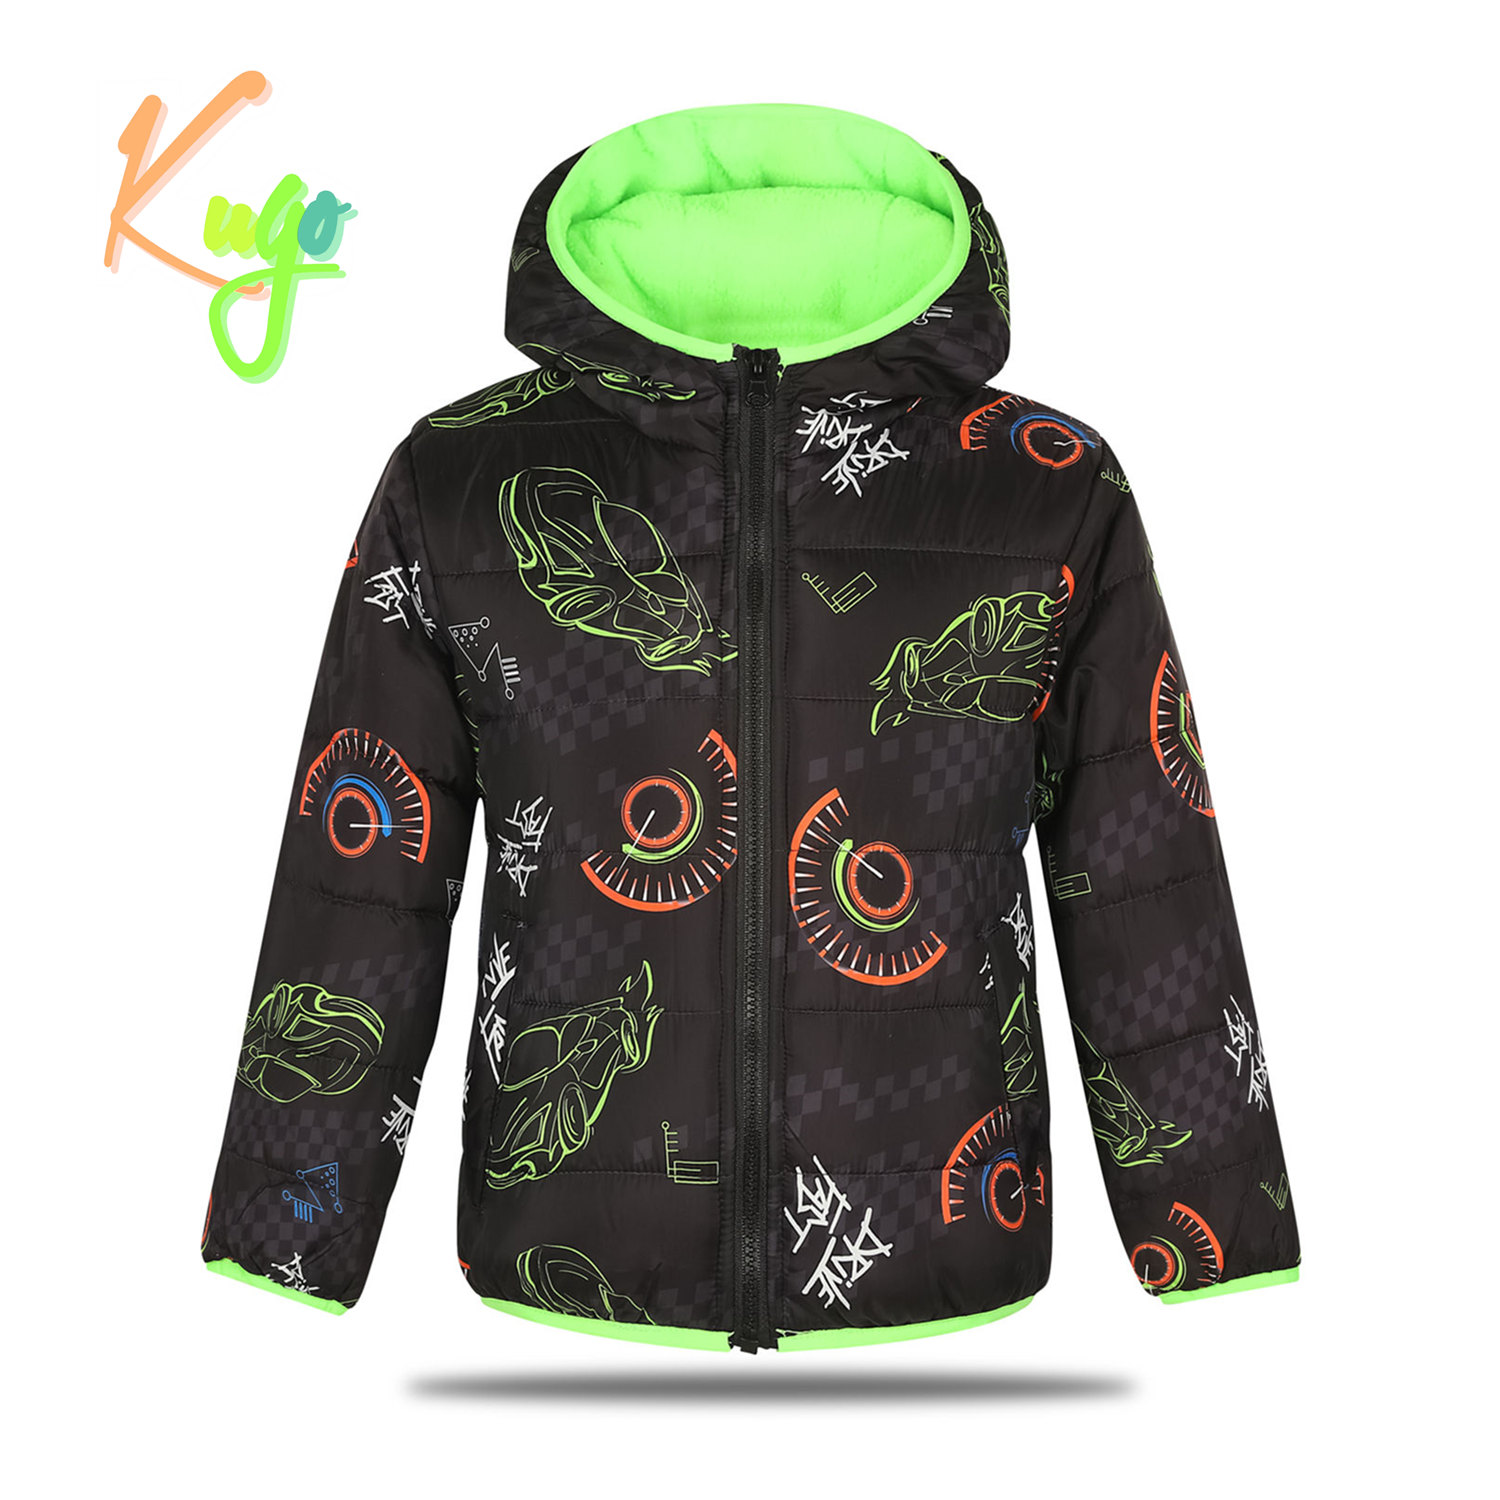 Chlapecká zimní bunda - KUGO FB0296, černá Barva: Černá, Velikost: 104